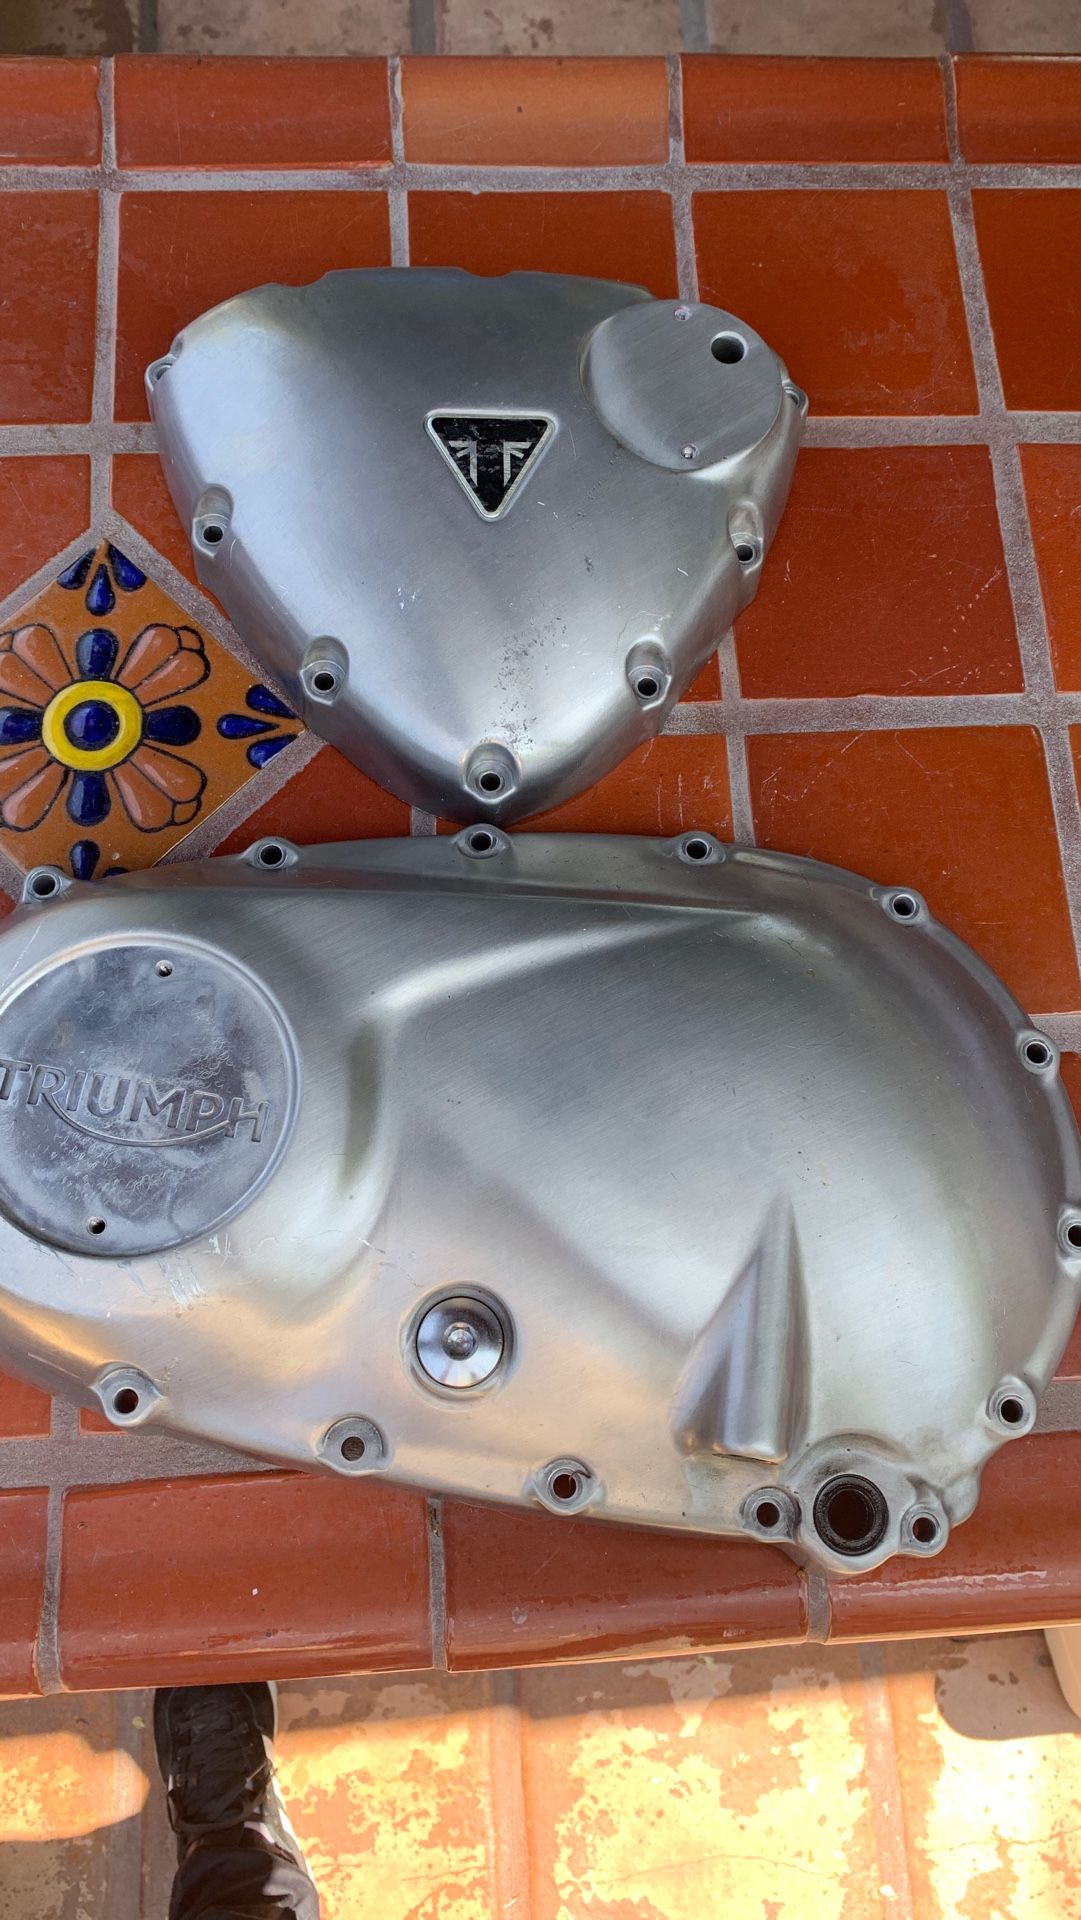 2016 Triumph Thruxton R. Engine covers